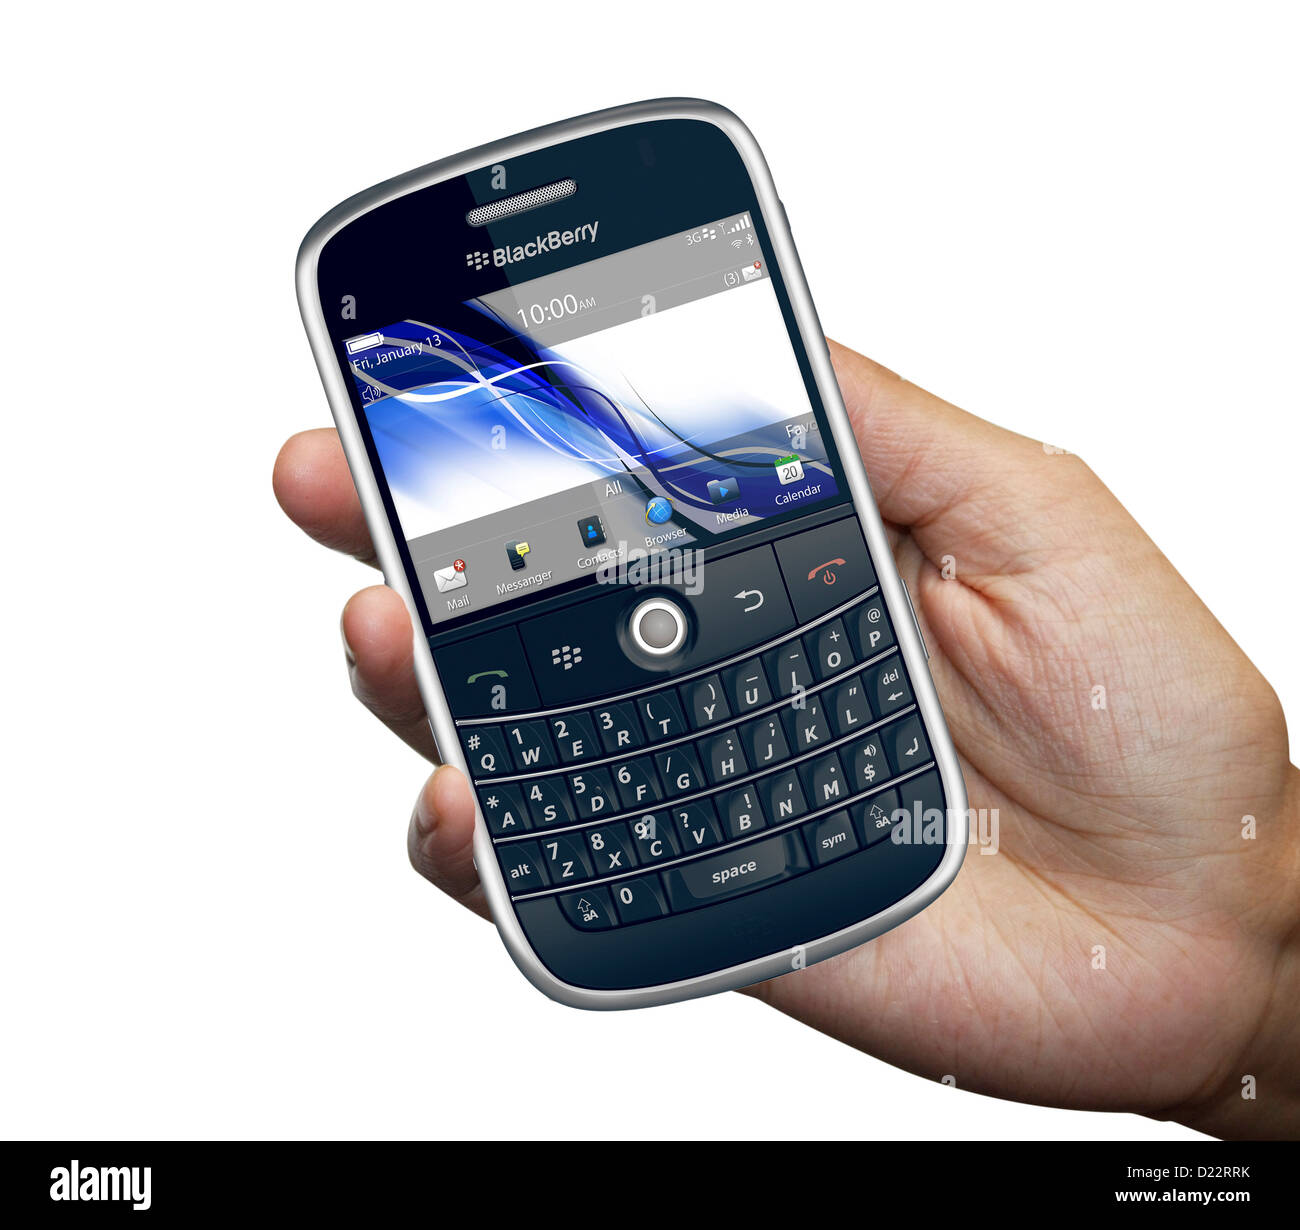 Telefono blackberry immagini e fotografie stock ad alta risoluzione - Alamy